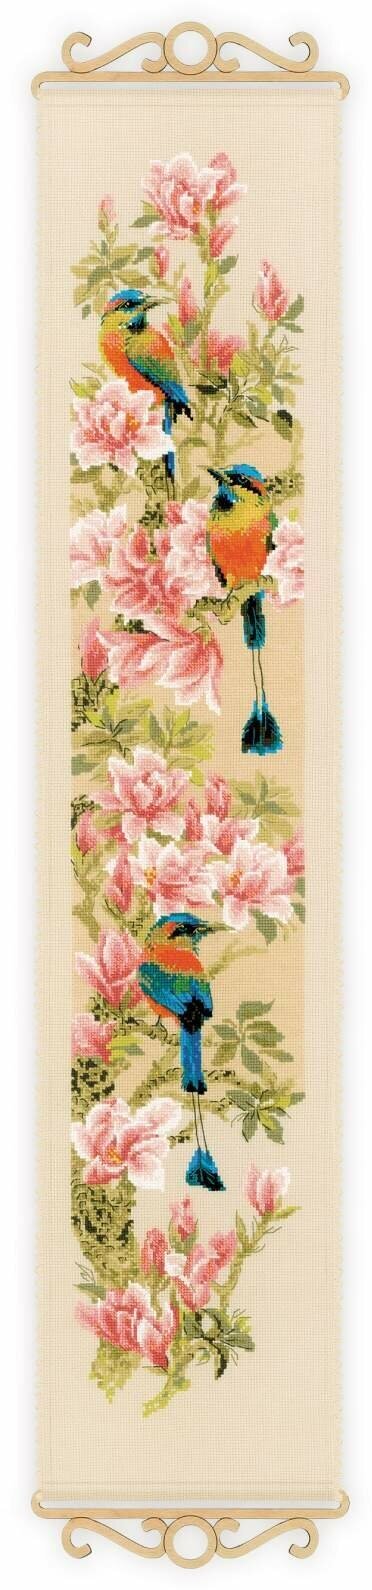 Набор для вышивания крестом Тропические птички Риолис арт.1905 19х90 см